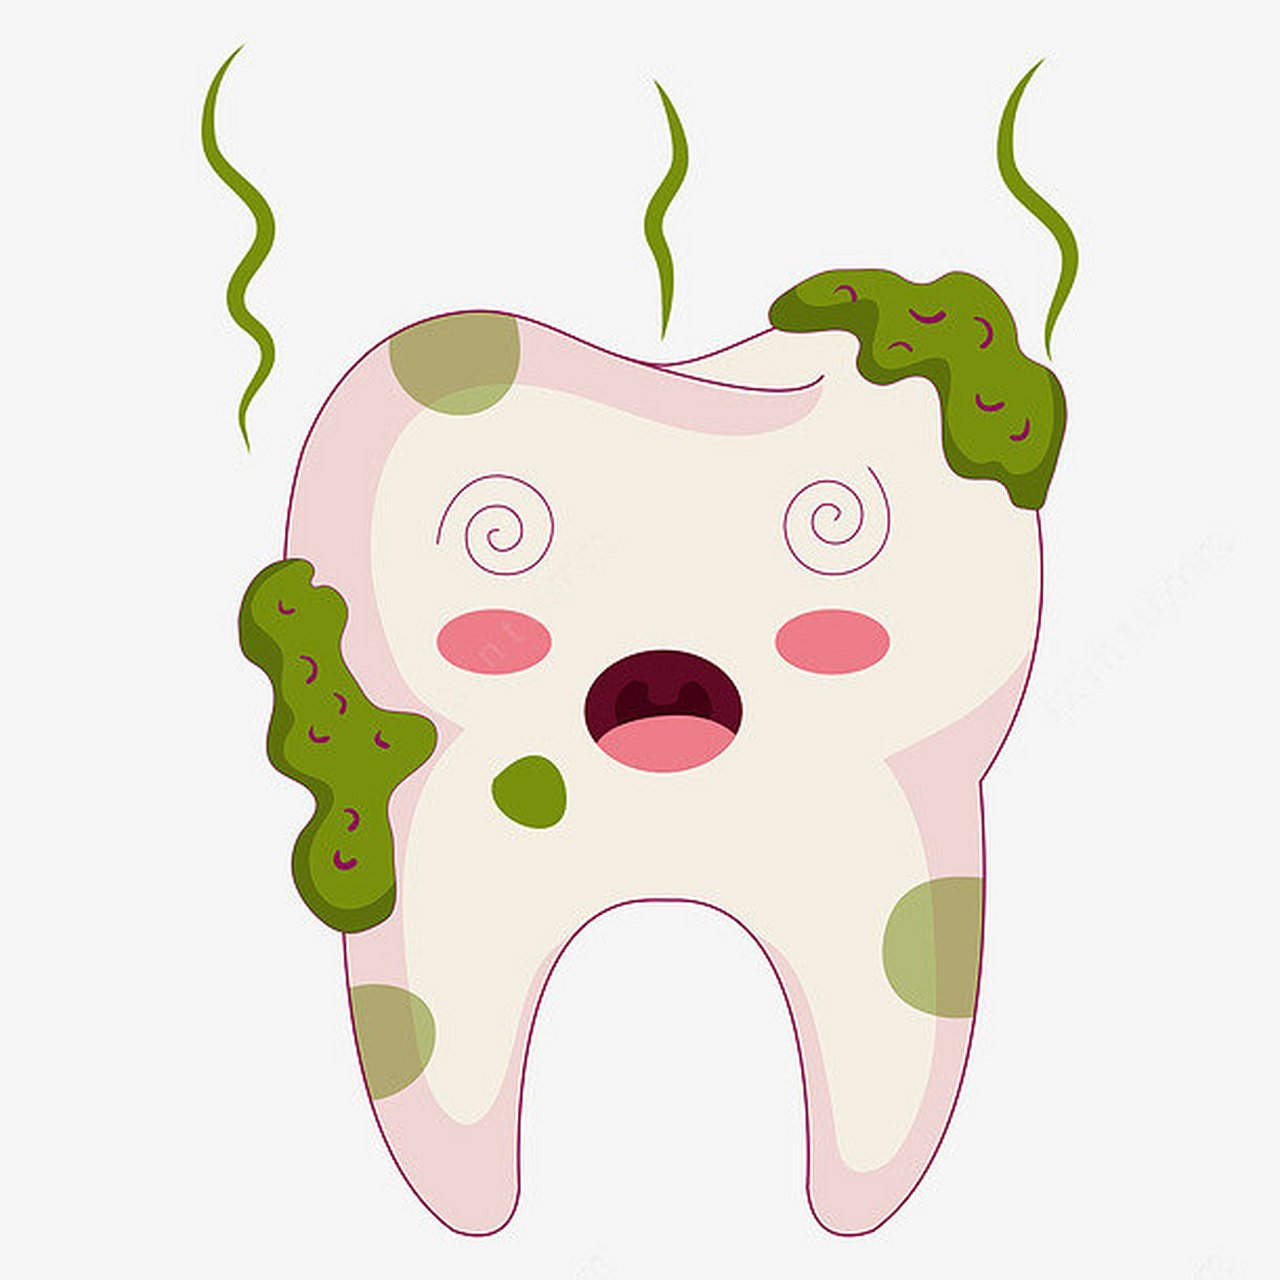 虫牙是这样发生的  导致虫牙的细菌以糖类为食物,经过一系列反应在